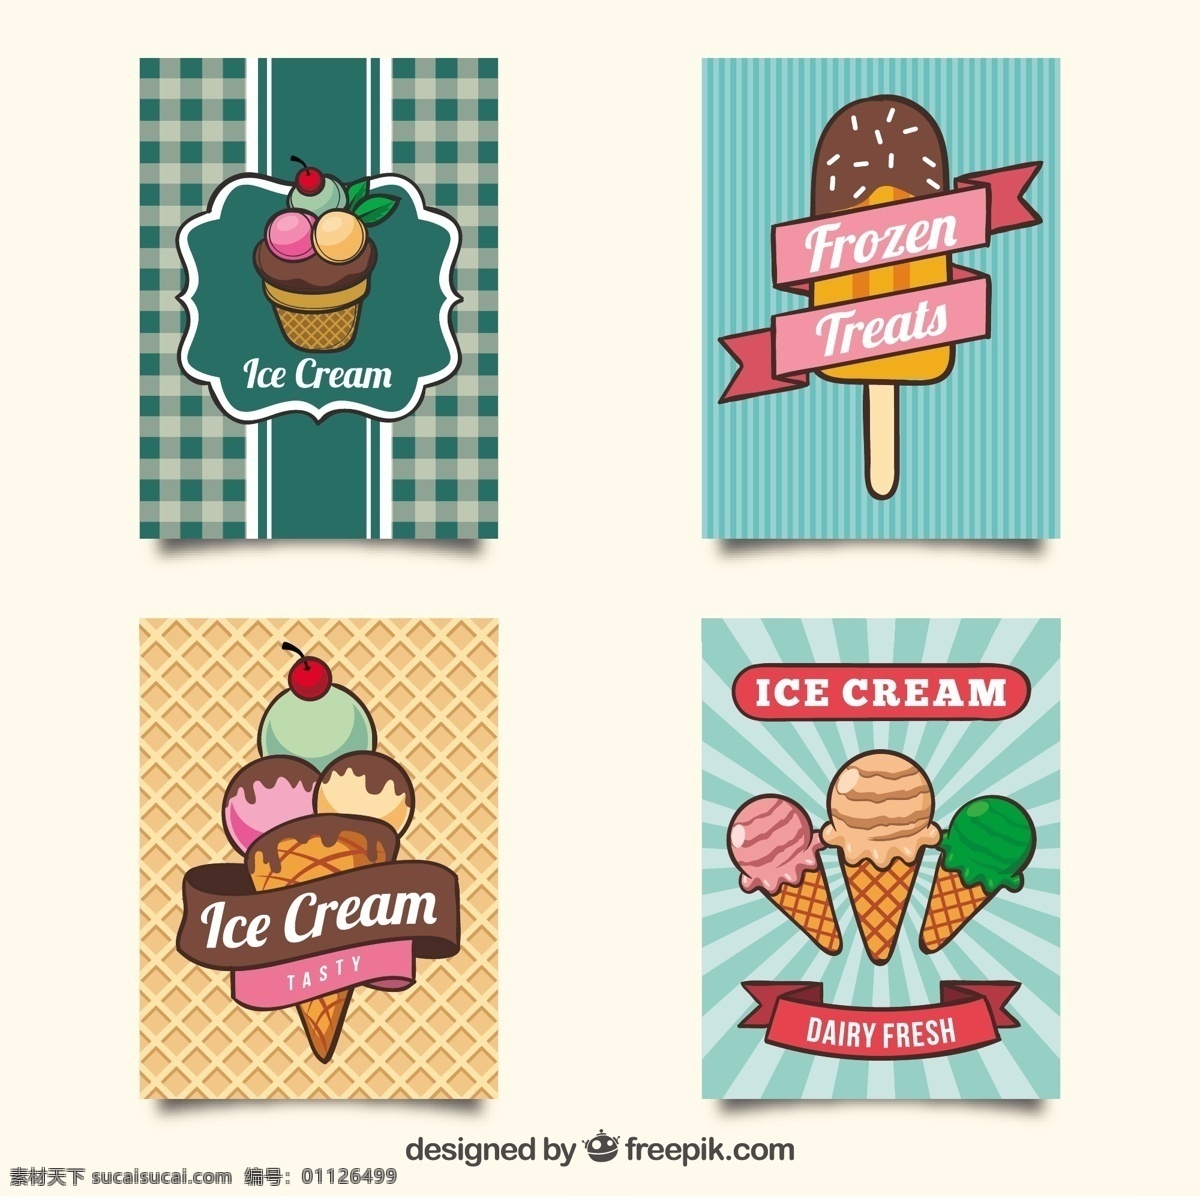 美味 冰淇淋 插图 矢量 美味的 冰淇淋插图 矢量素材 甜品图标 冷饮插图 清凉甜品 冰淇淋标志 卡通图标 雪糕图标 网页图标 冰激凌图标 冰激凌插图